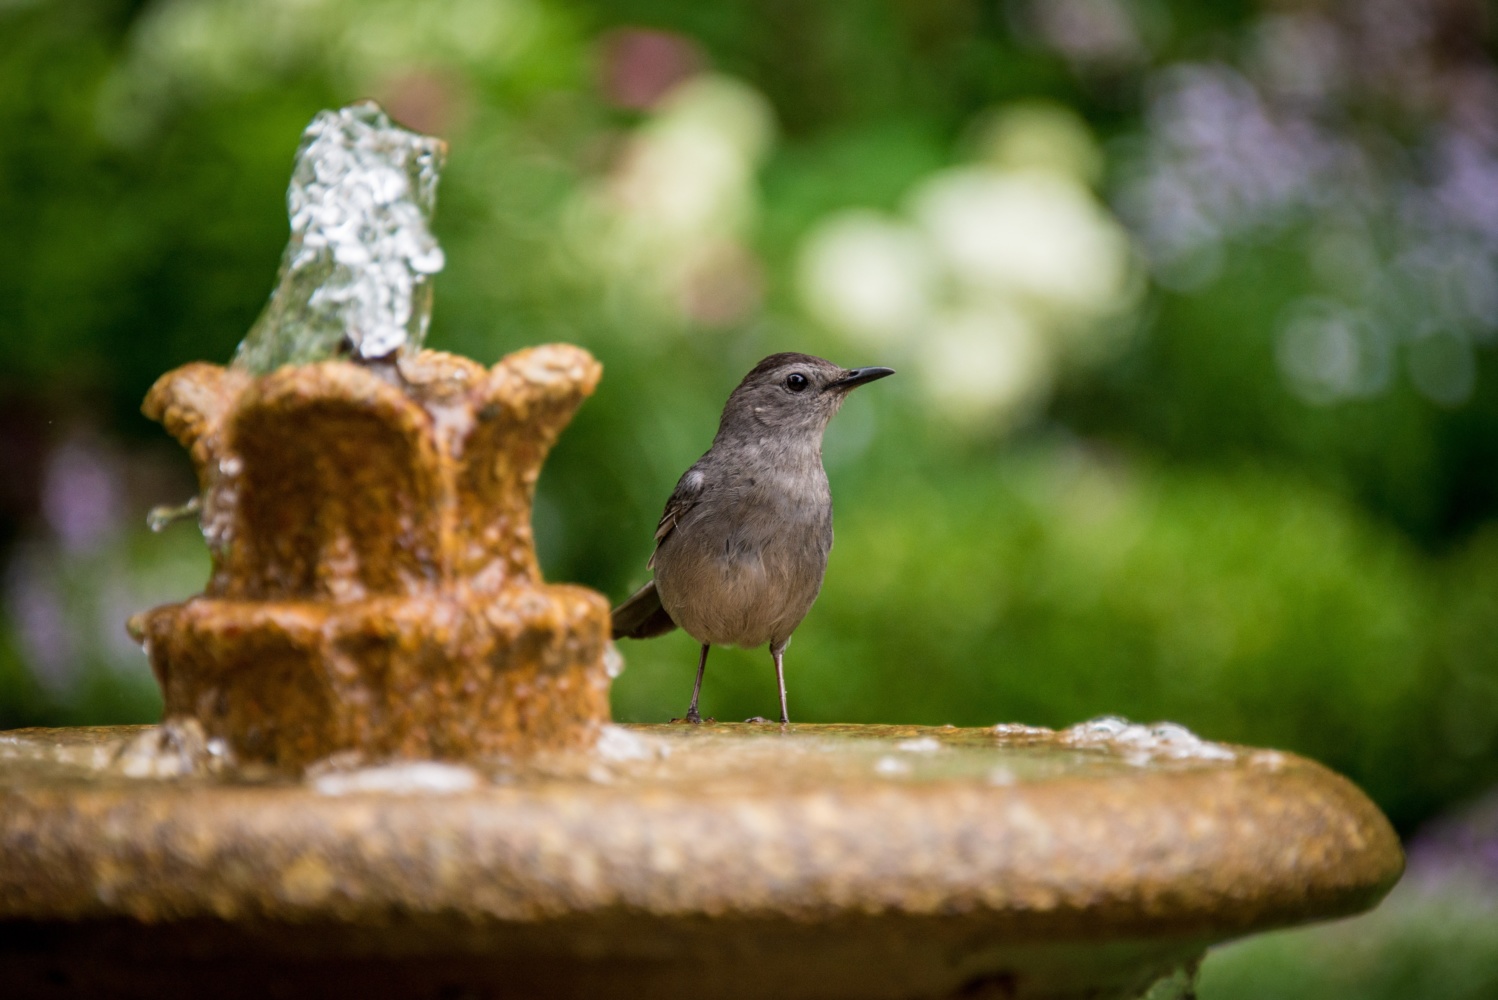 Brown bird perched on edge of bird bath in garden